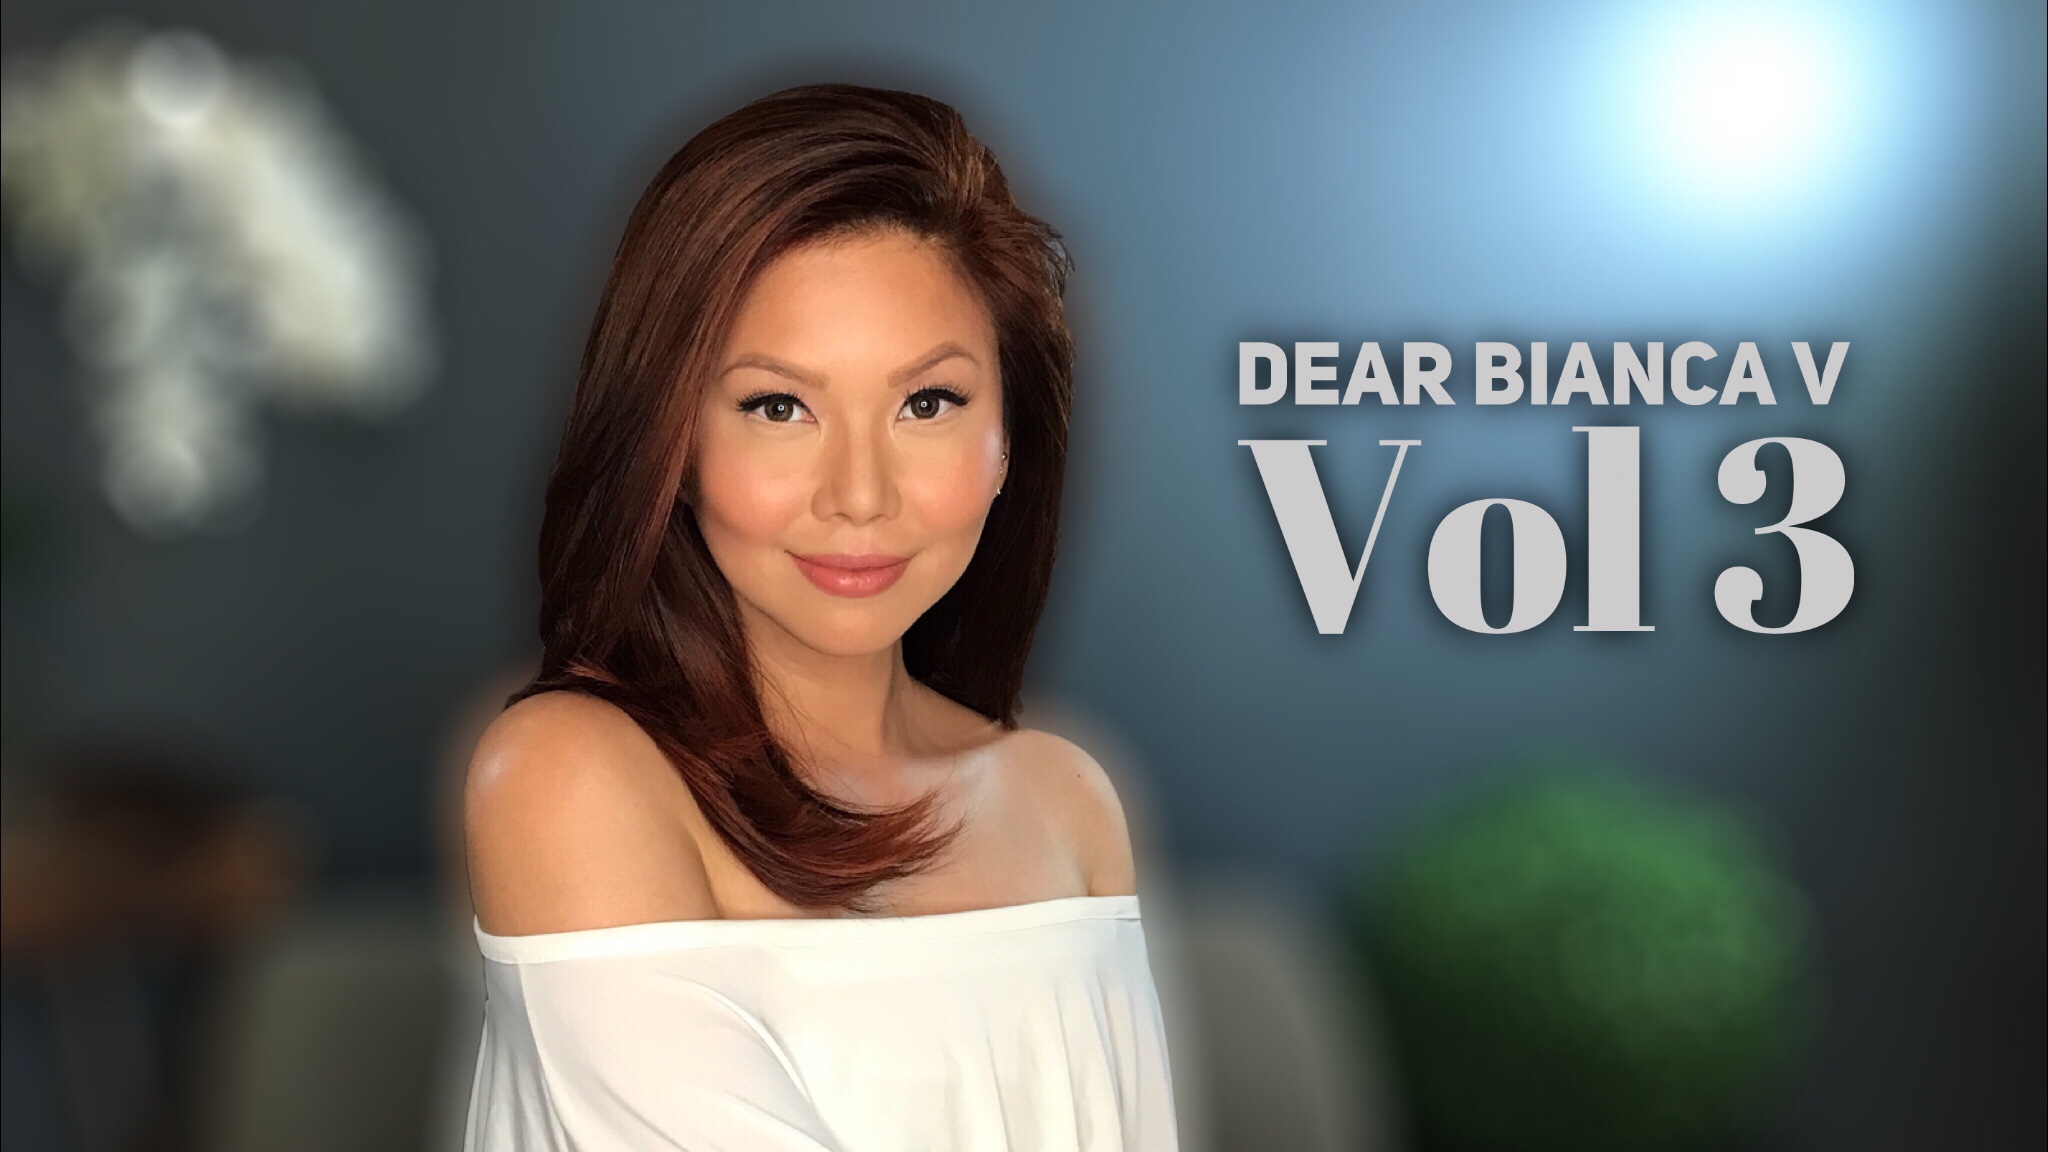 Dear Bianca V Career